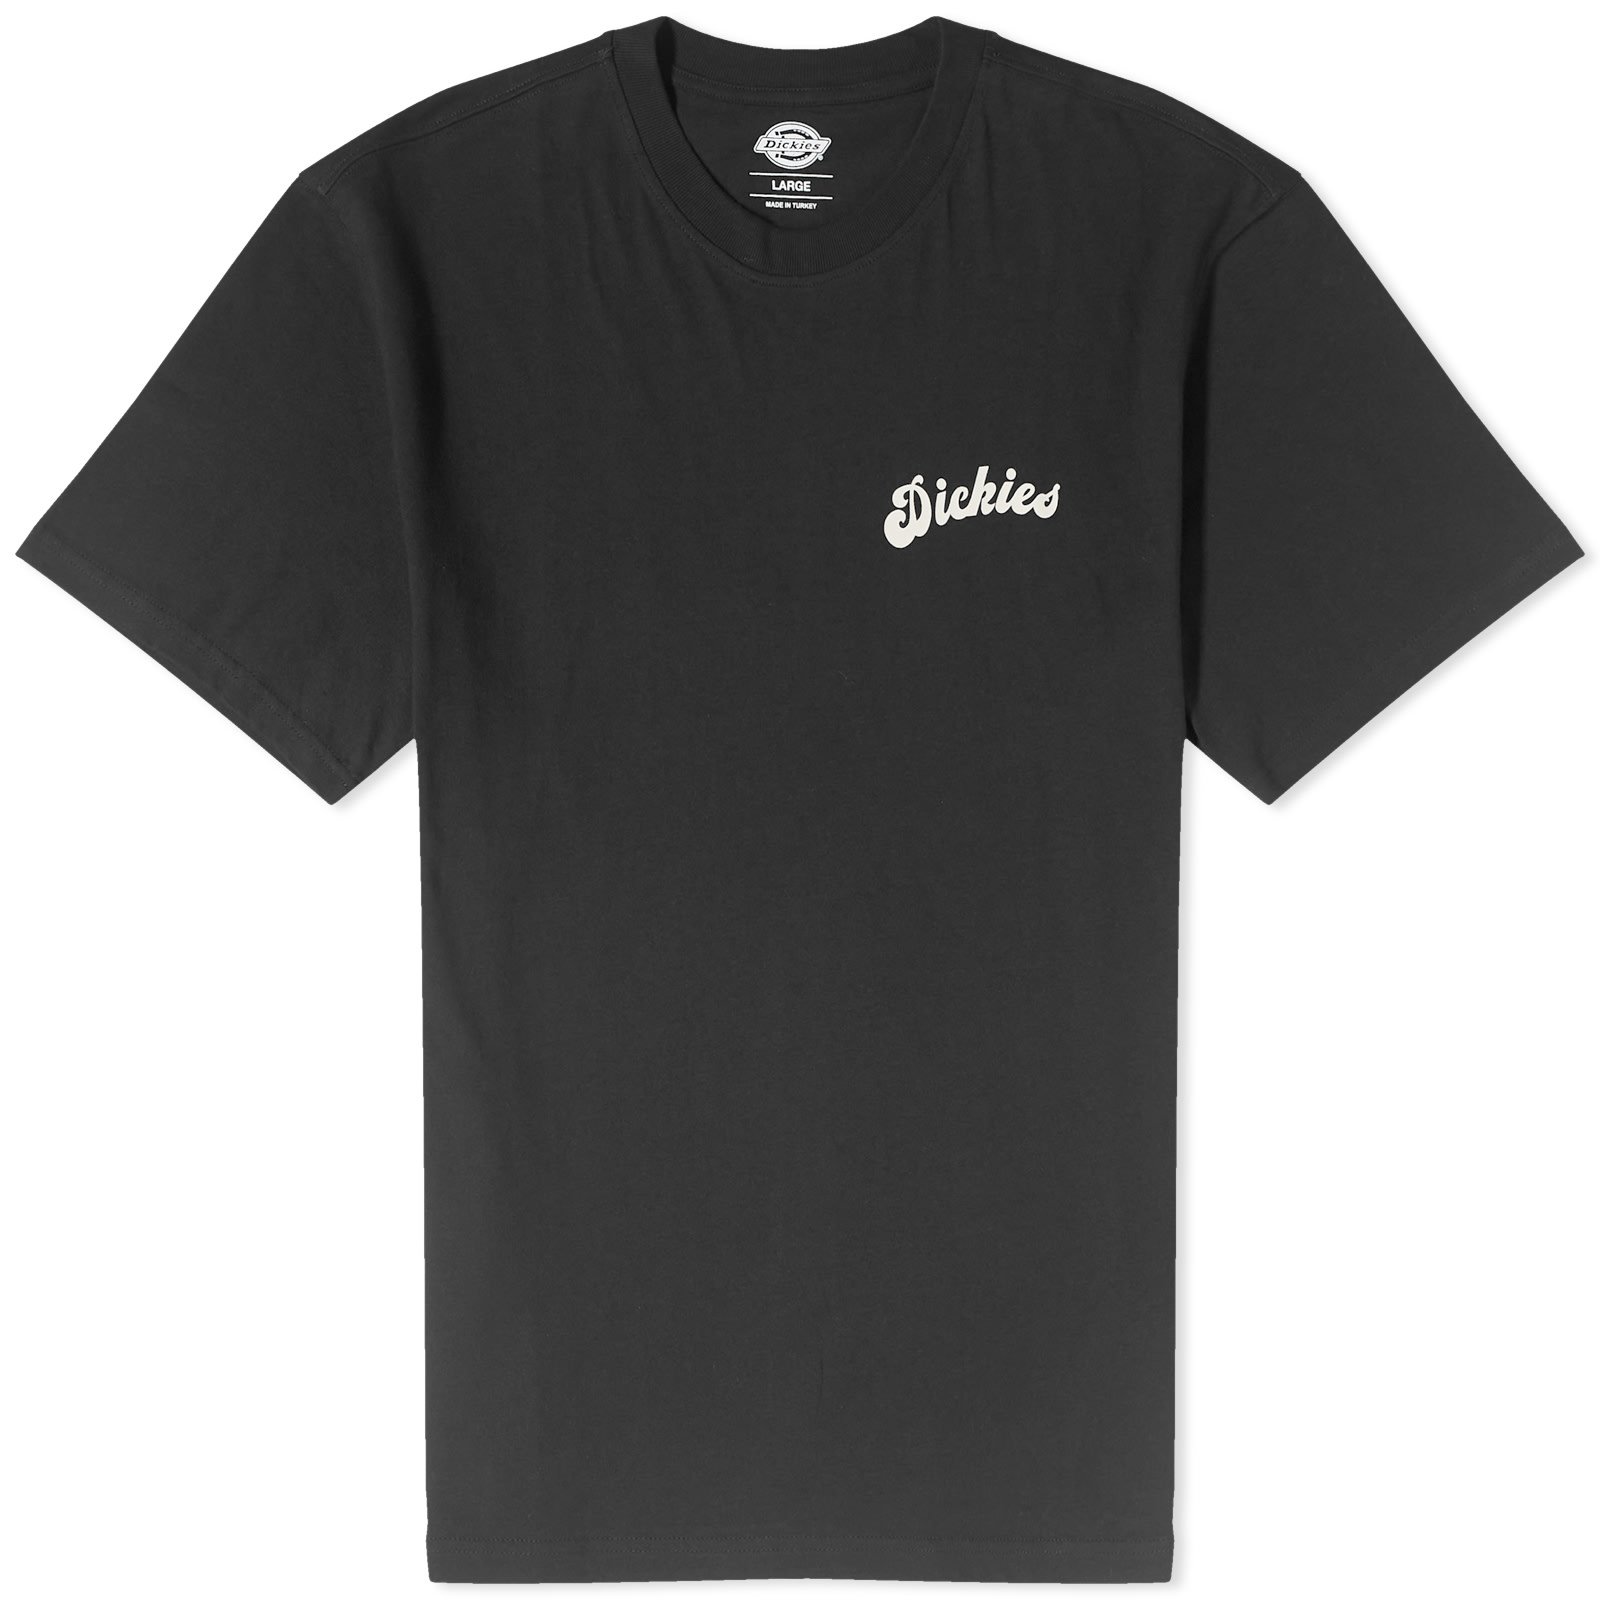 Grainfield T-Shirt